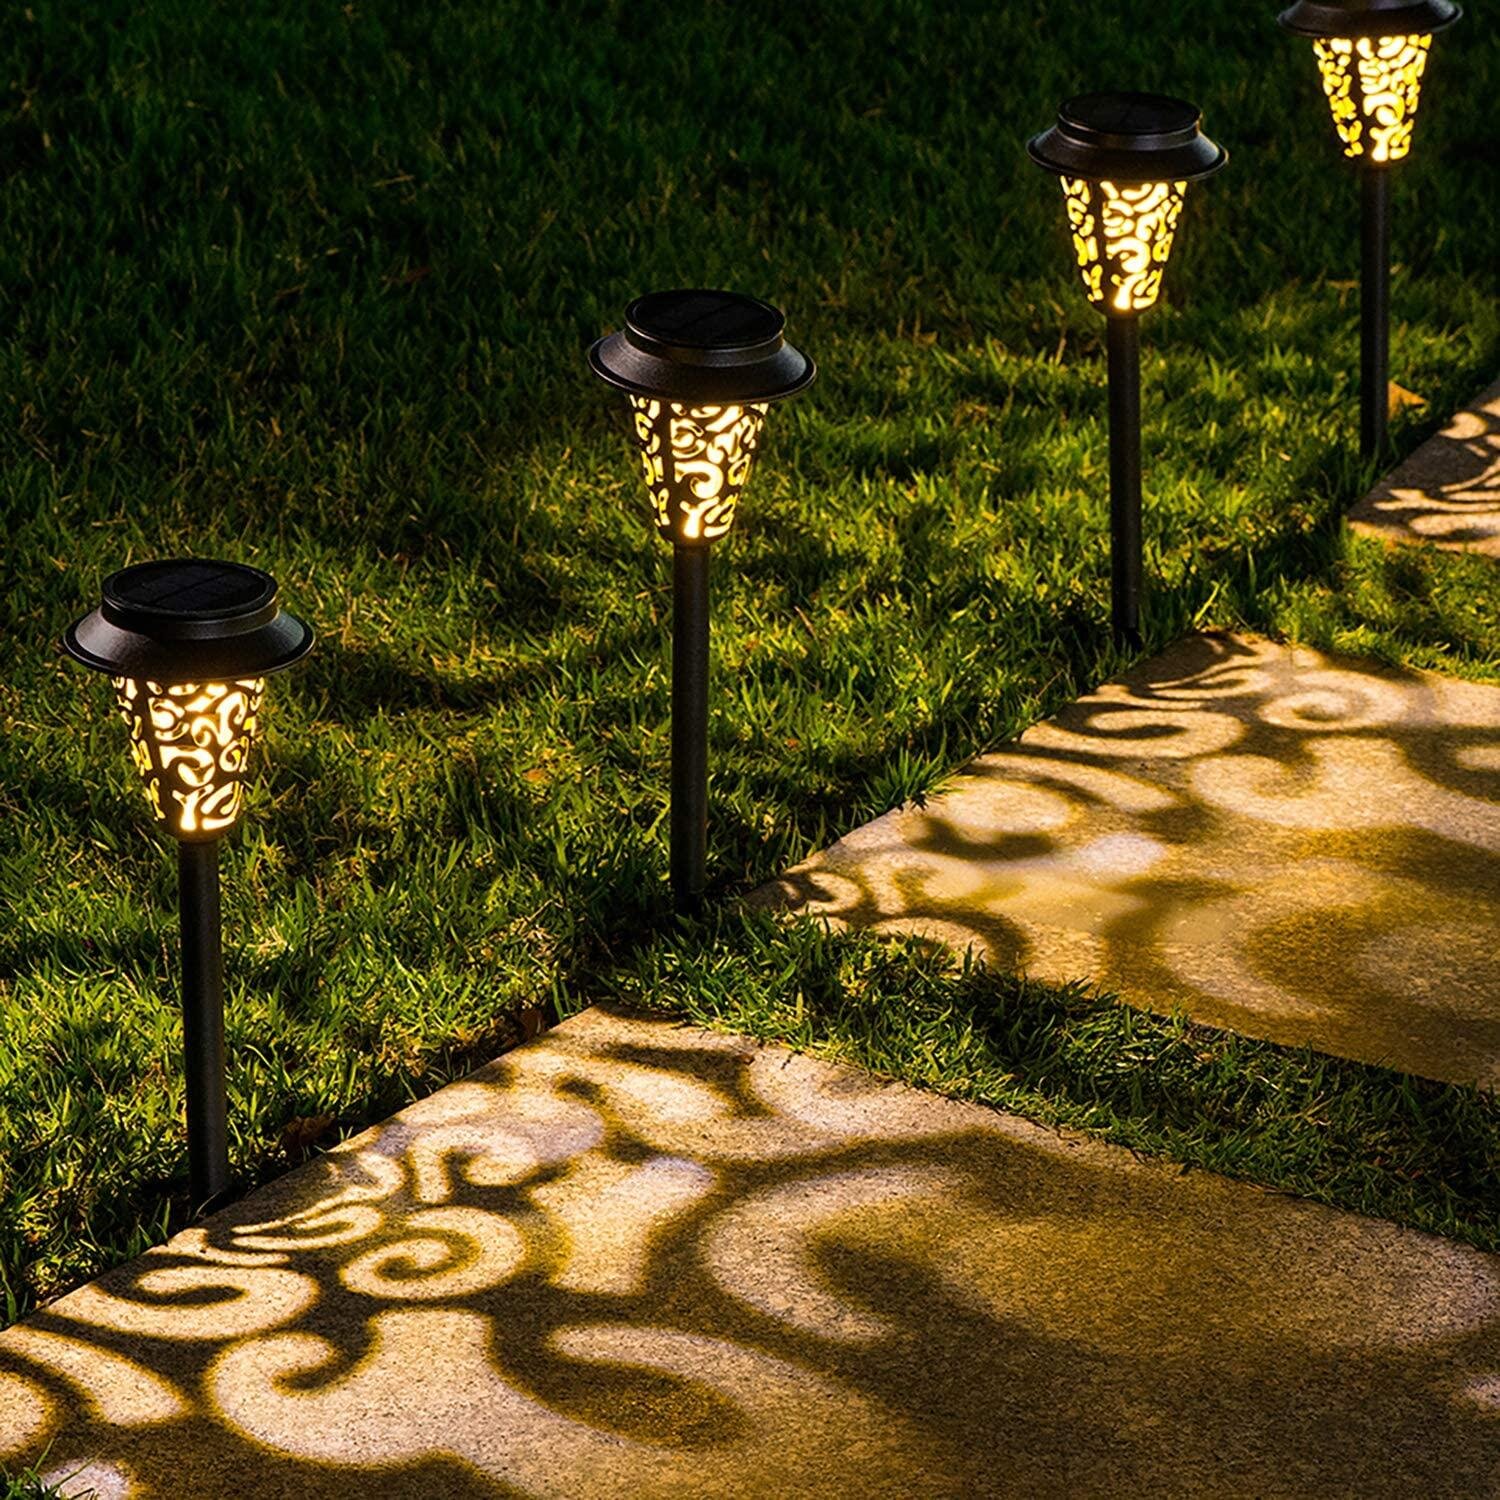 LED Garden Lawn Light Landscape Lamp Spike Waterproof Path Bulb Spot Outdoor